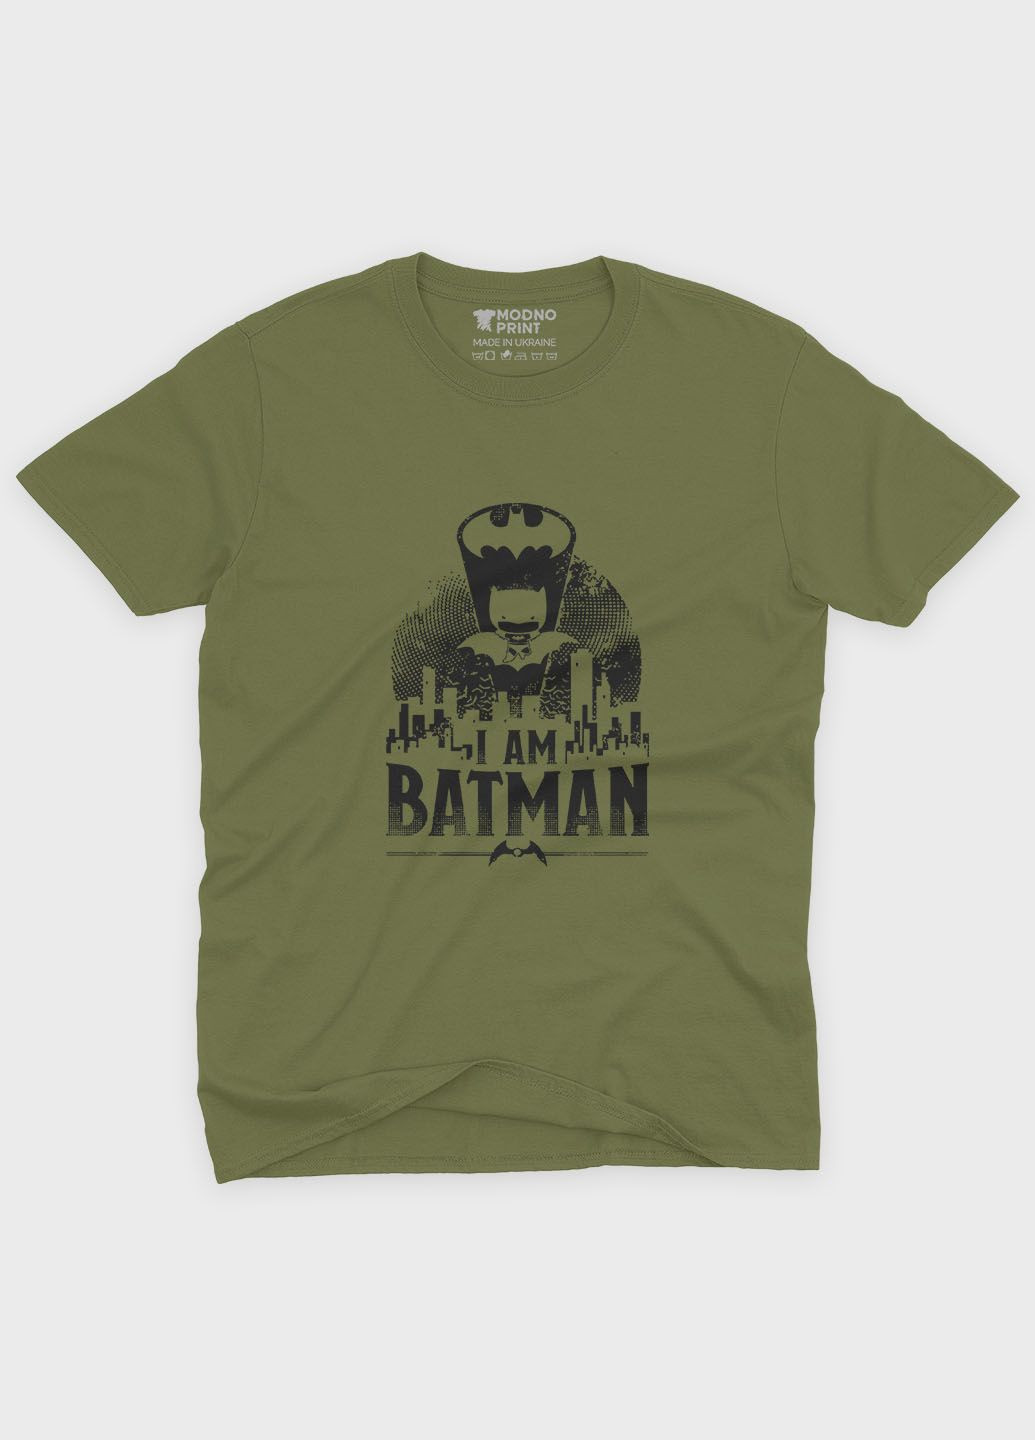 Хаки (оливковая) мужская футболка с принтом супергероя - бэтмен (ts001-1-hgr-006-003-039) Modno